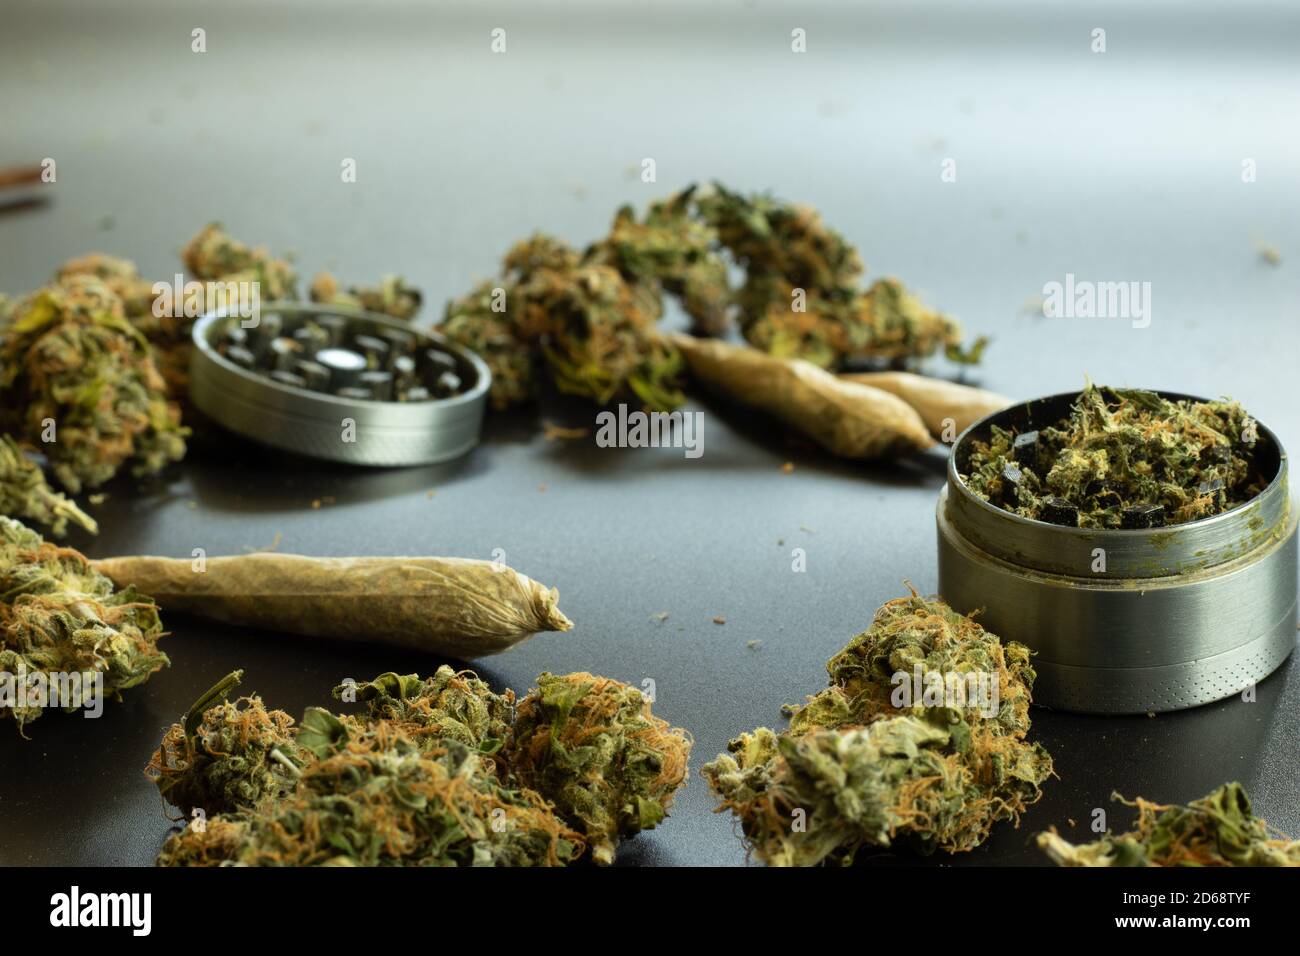 Design kopieren Raum Marihuana Hintergrund, Cannabis Knospen und Unkraut Mühle. Gelenke für das Rauchen medizinisches Marihuana Stockfoto